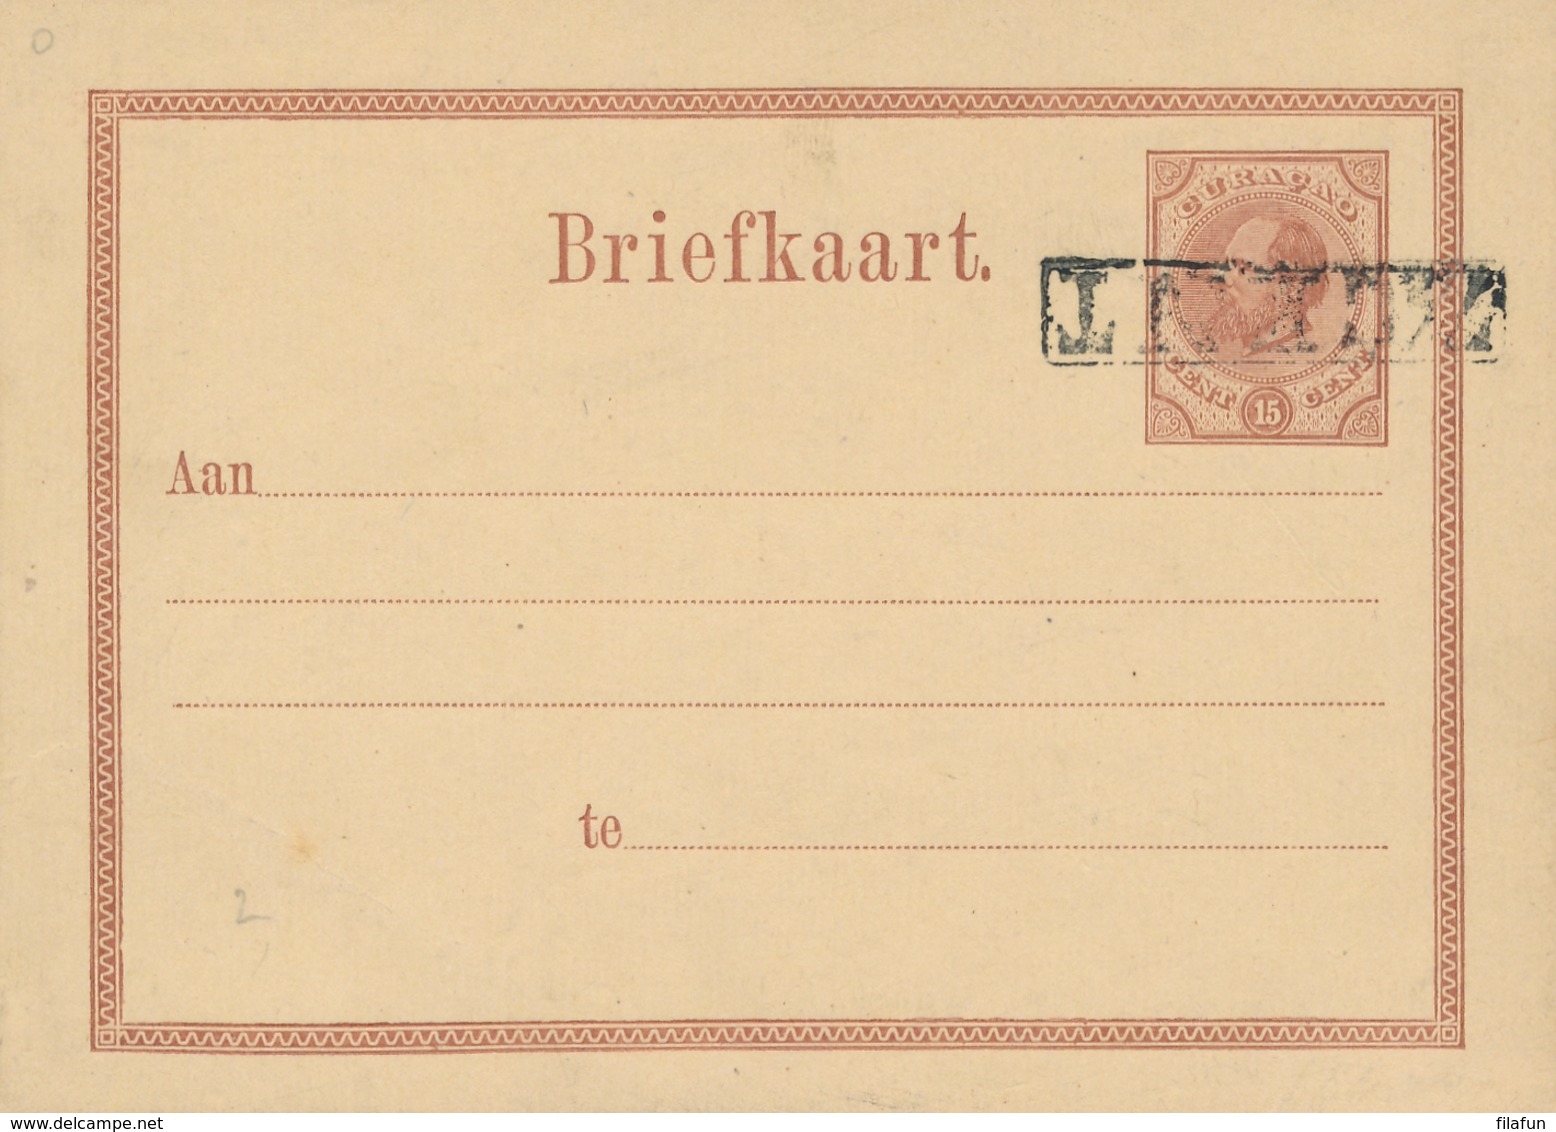 Curacao - 1879 - 7,5 Cent Op 15 Cent Willem III, Briefkaart G4a Met Kopstaande Opdruk / Inverted Overprint - Curaçao, Nederlandse Antillen, Aruba